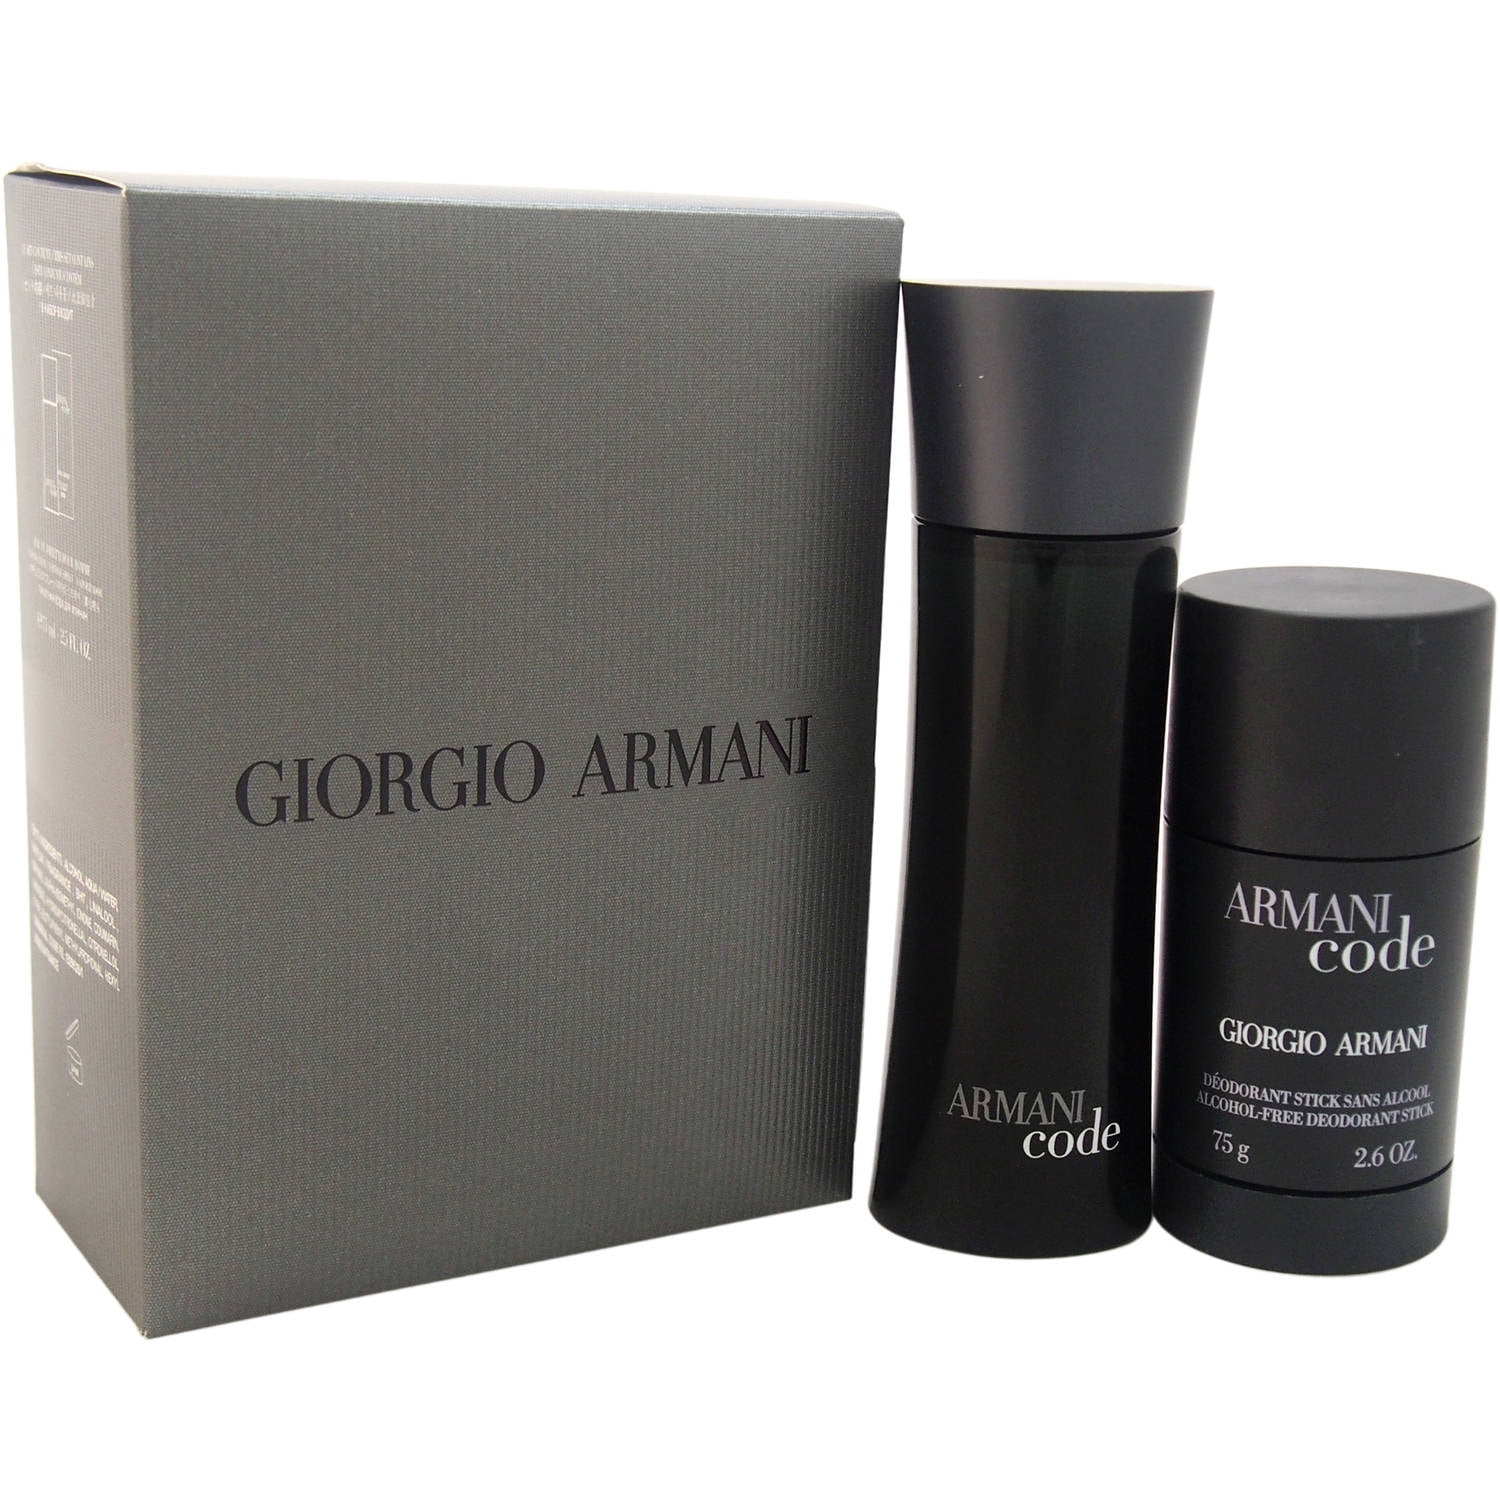 spannend Afstoting schouder Giorgio Armani Armani Code Gift Set, 2 pc - Walmart.com